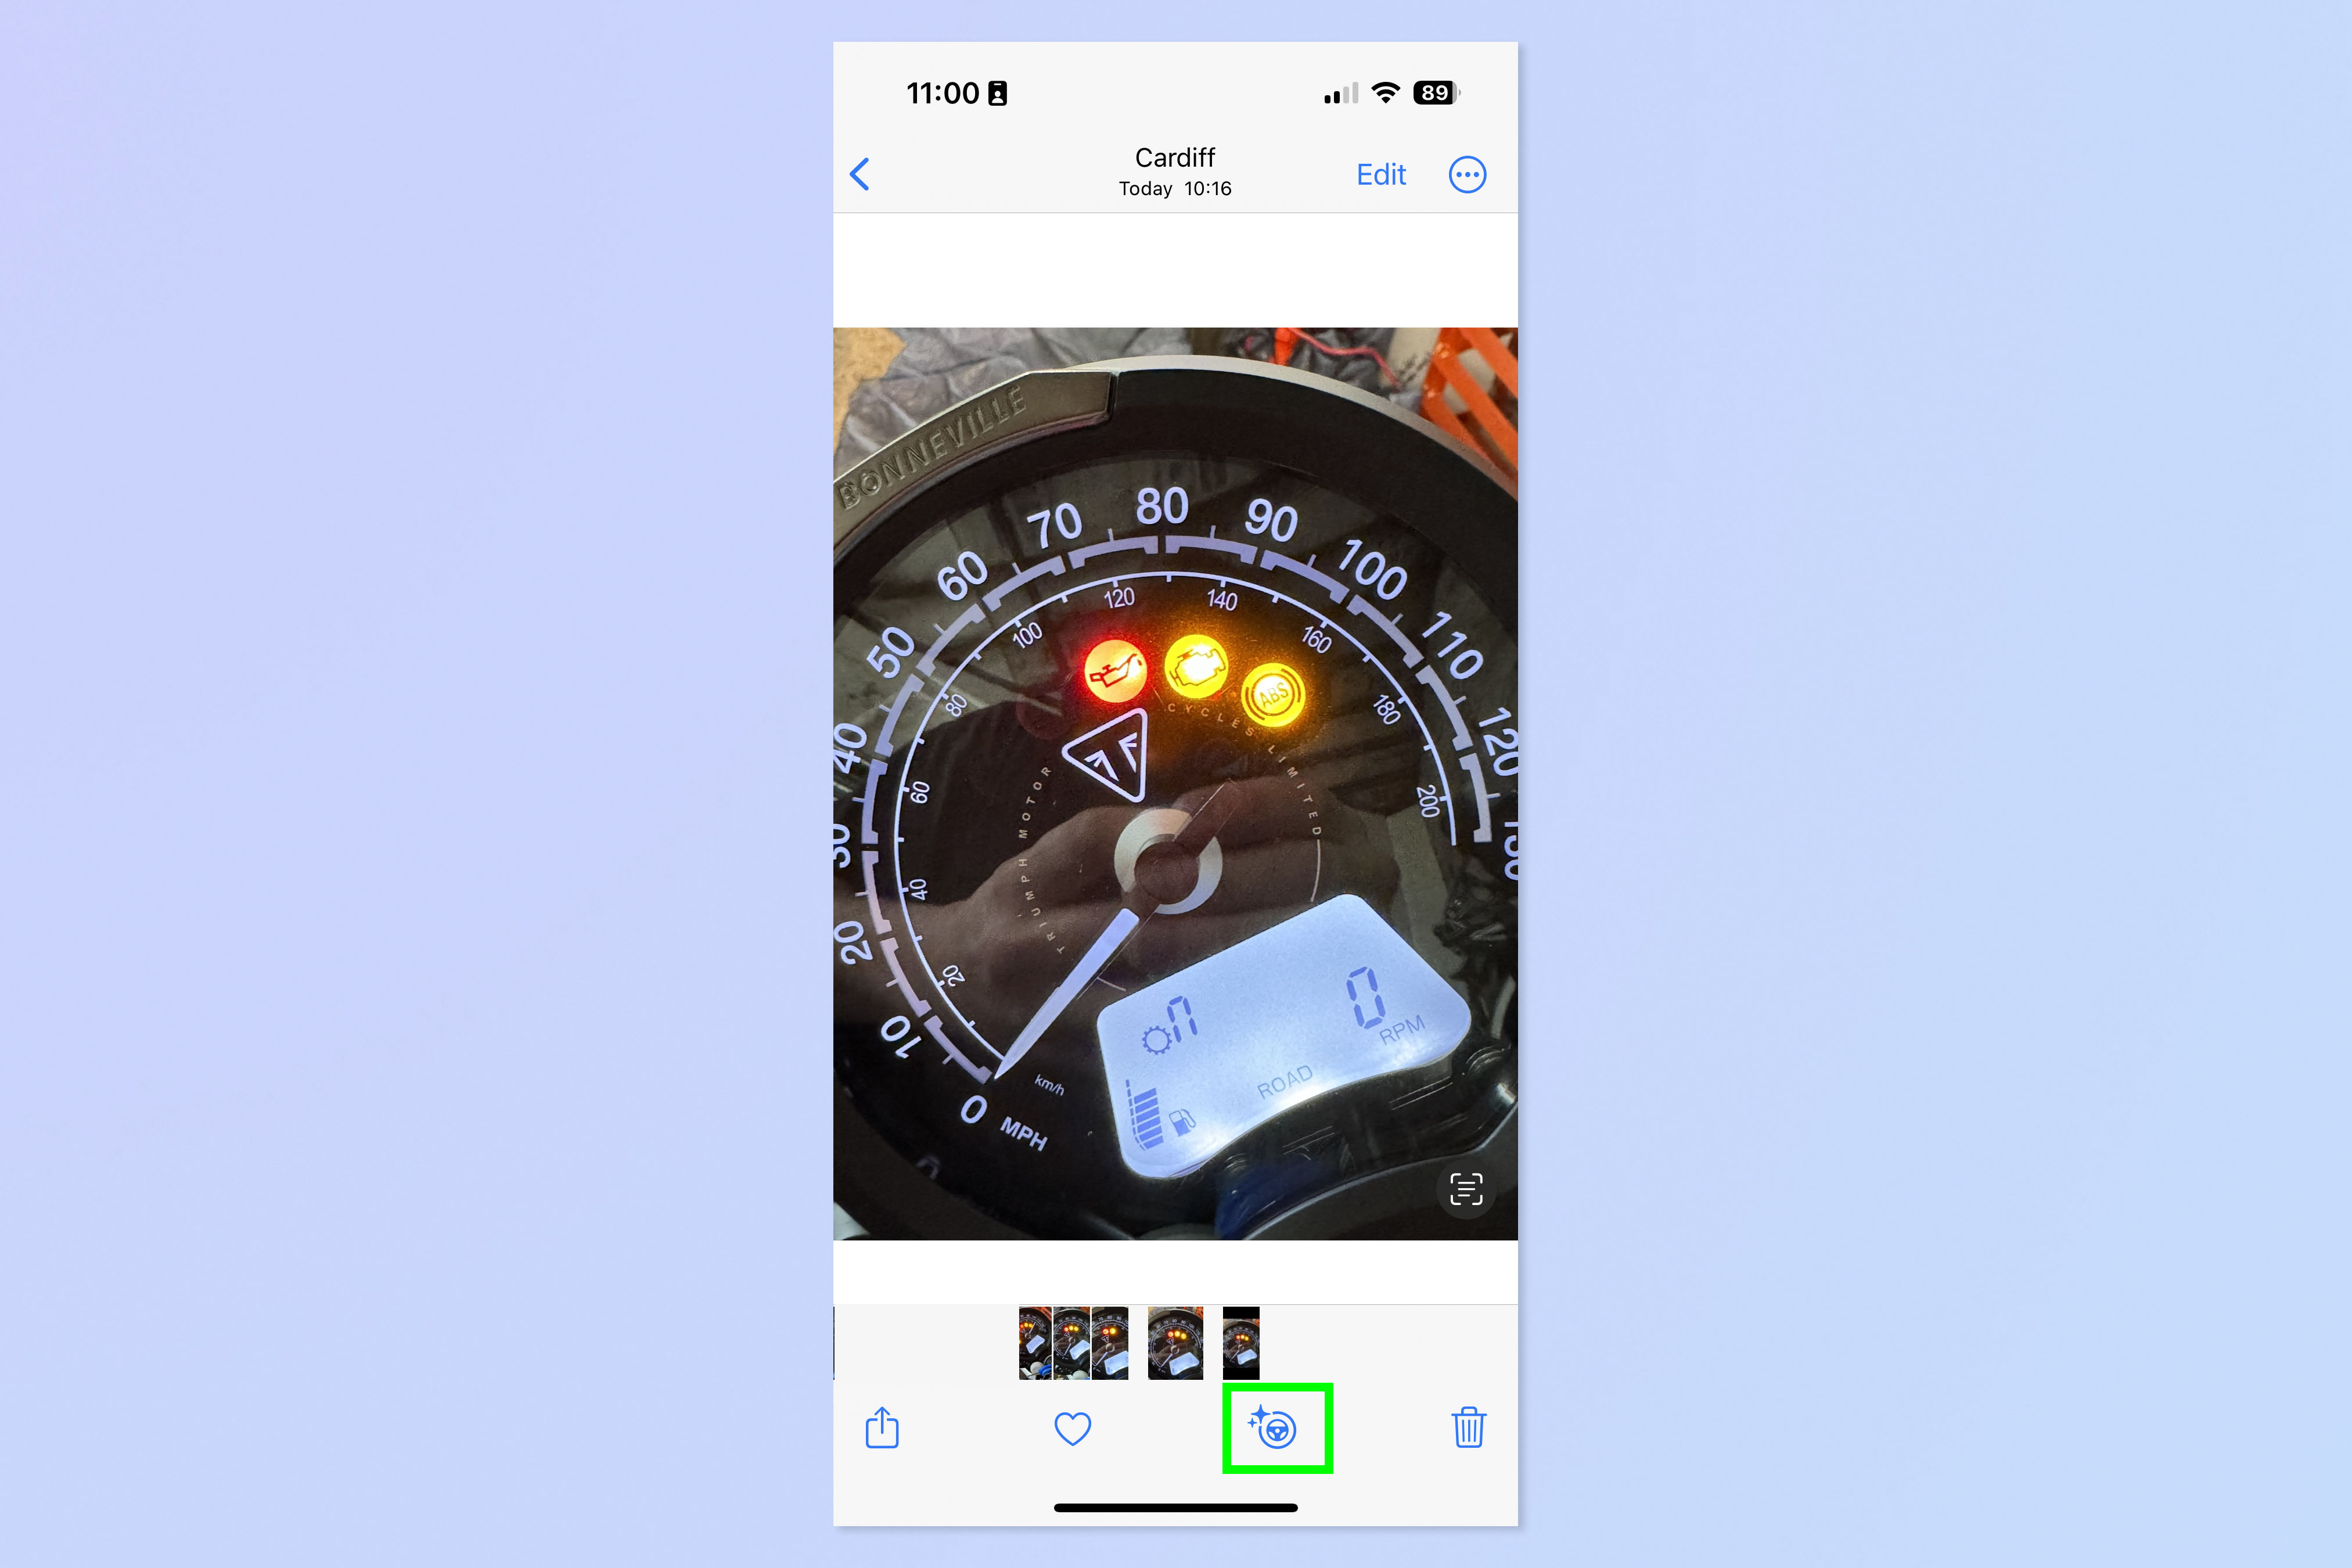 Снимок экрана, показывающий, как использовать Visual Look Up для определения индикаторов приборной панели на iPhone.